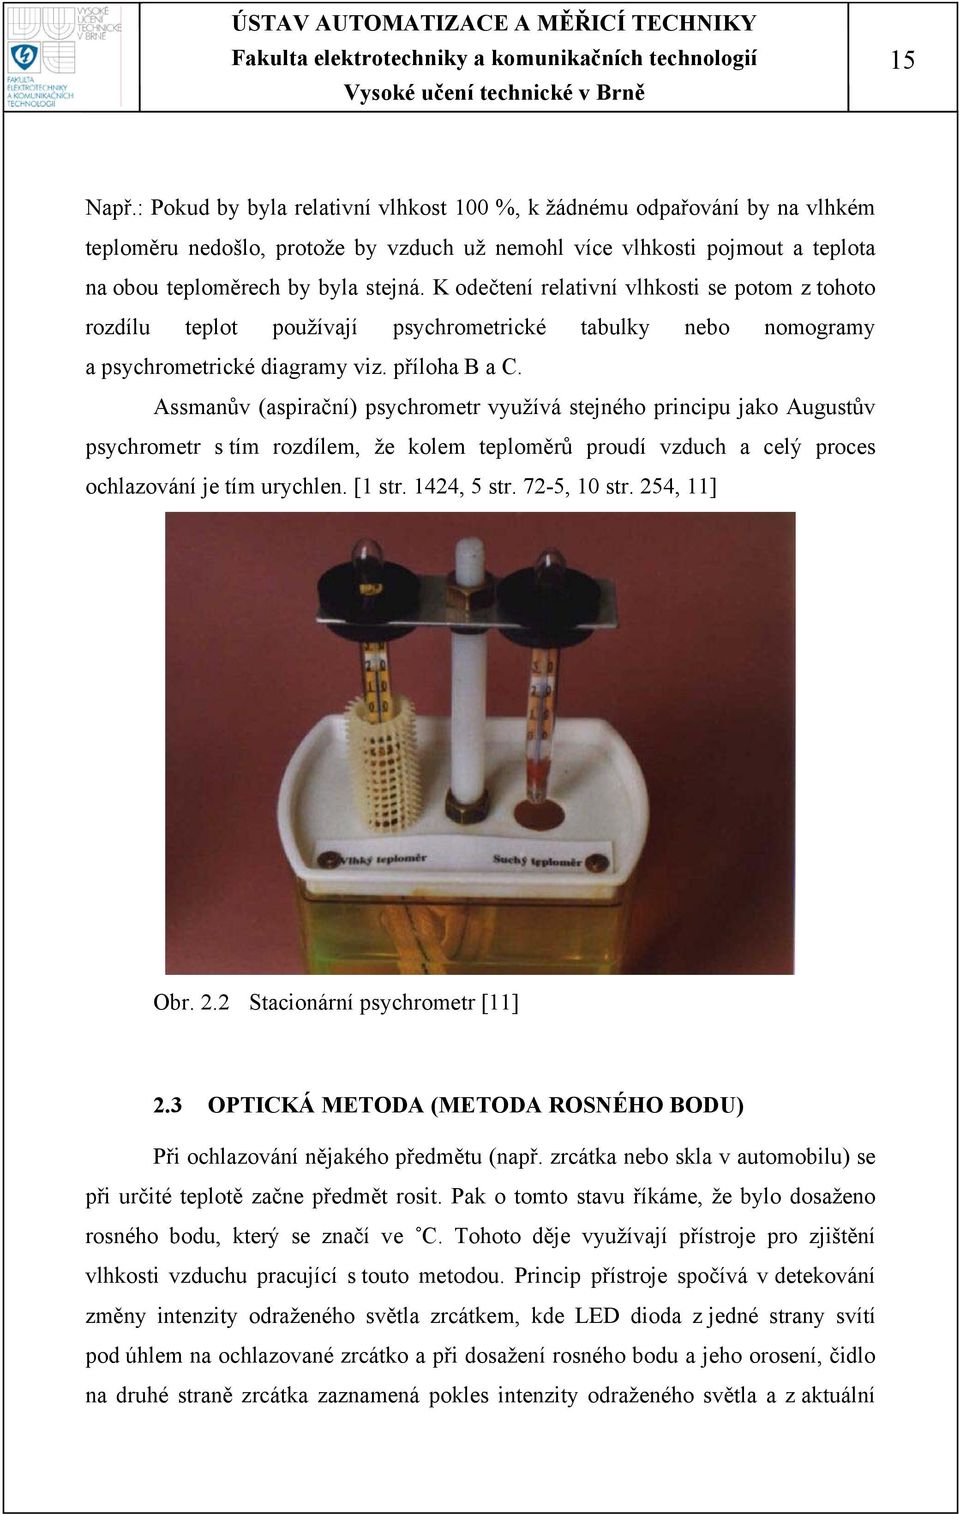 Assmanův (aspirační) psychrometr využívá stejného principu jako Augustův psychrometr s tím rozdílem, že kolem teploměrů proudí vzduch a celý proces ochlazování je tím urychlen. [1 str. 1424, 5 str.